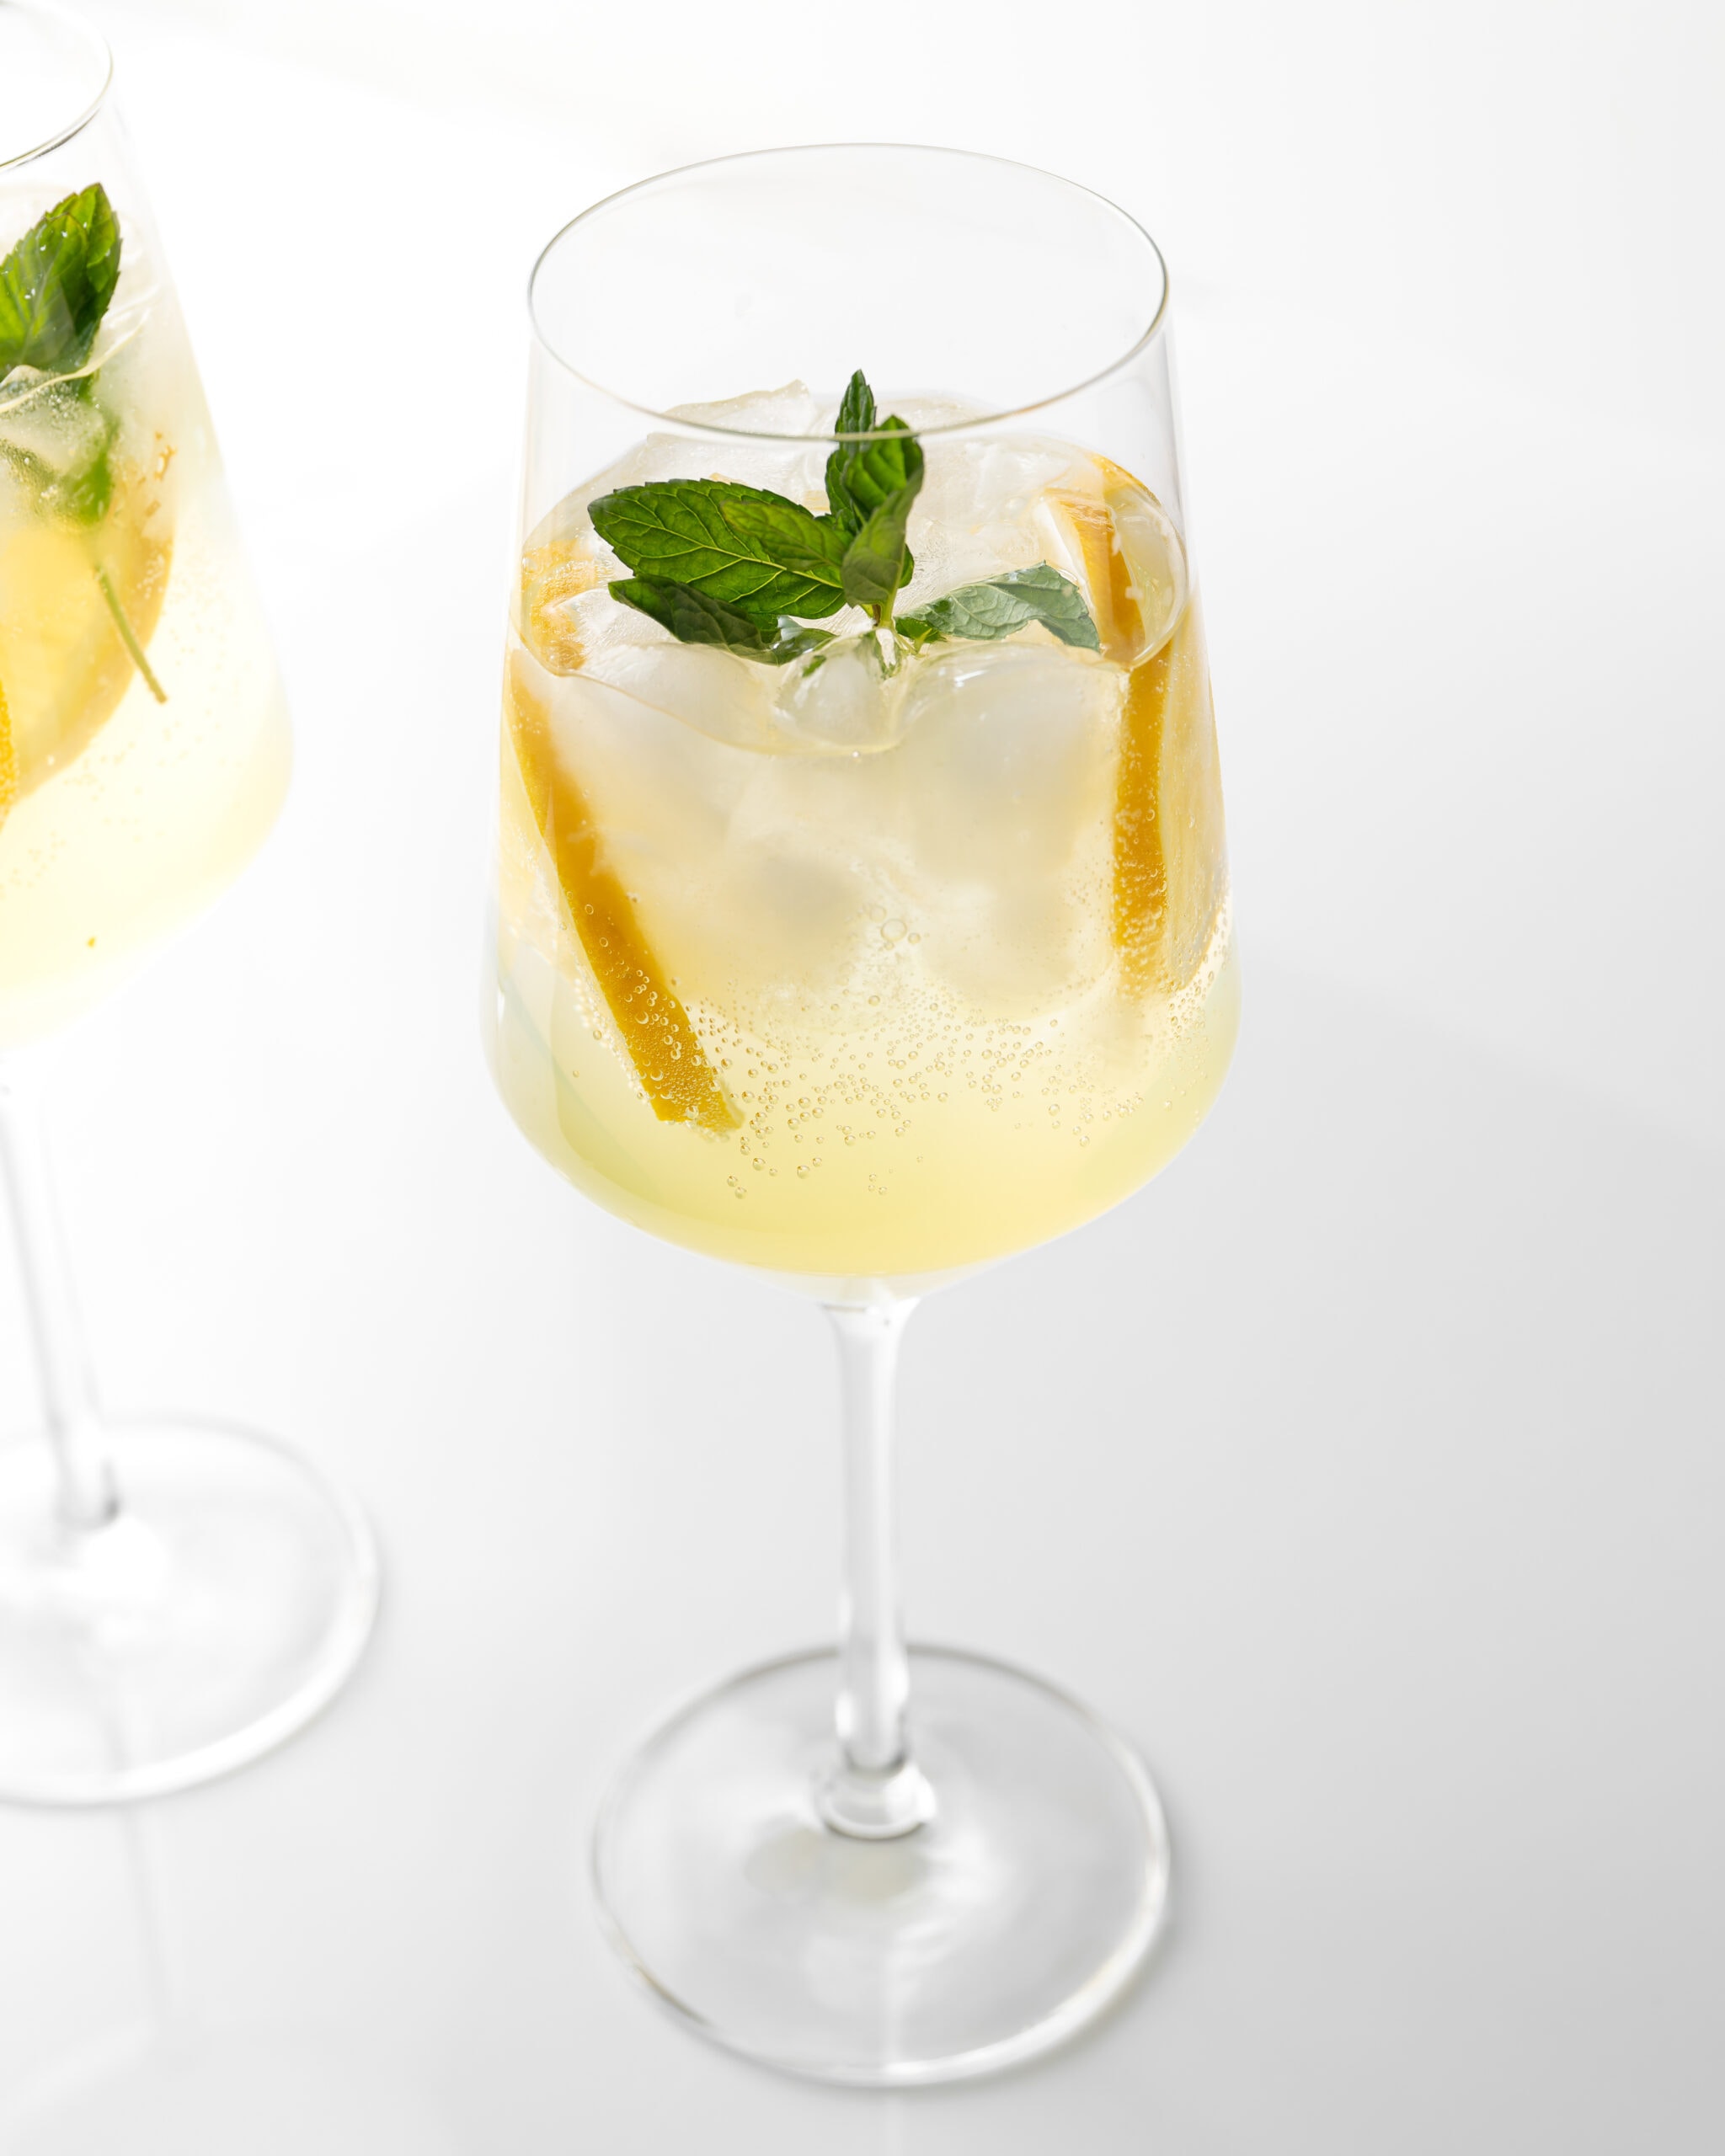 Limoncello spritz cocktail with bubbles, lemon slices, and mint.